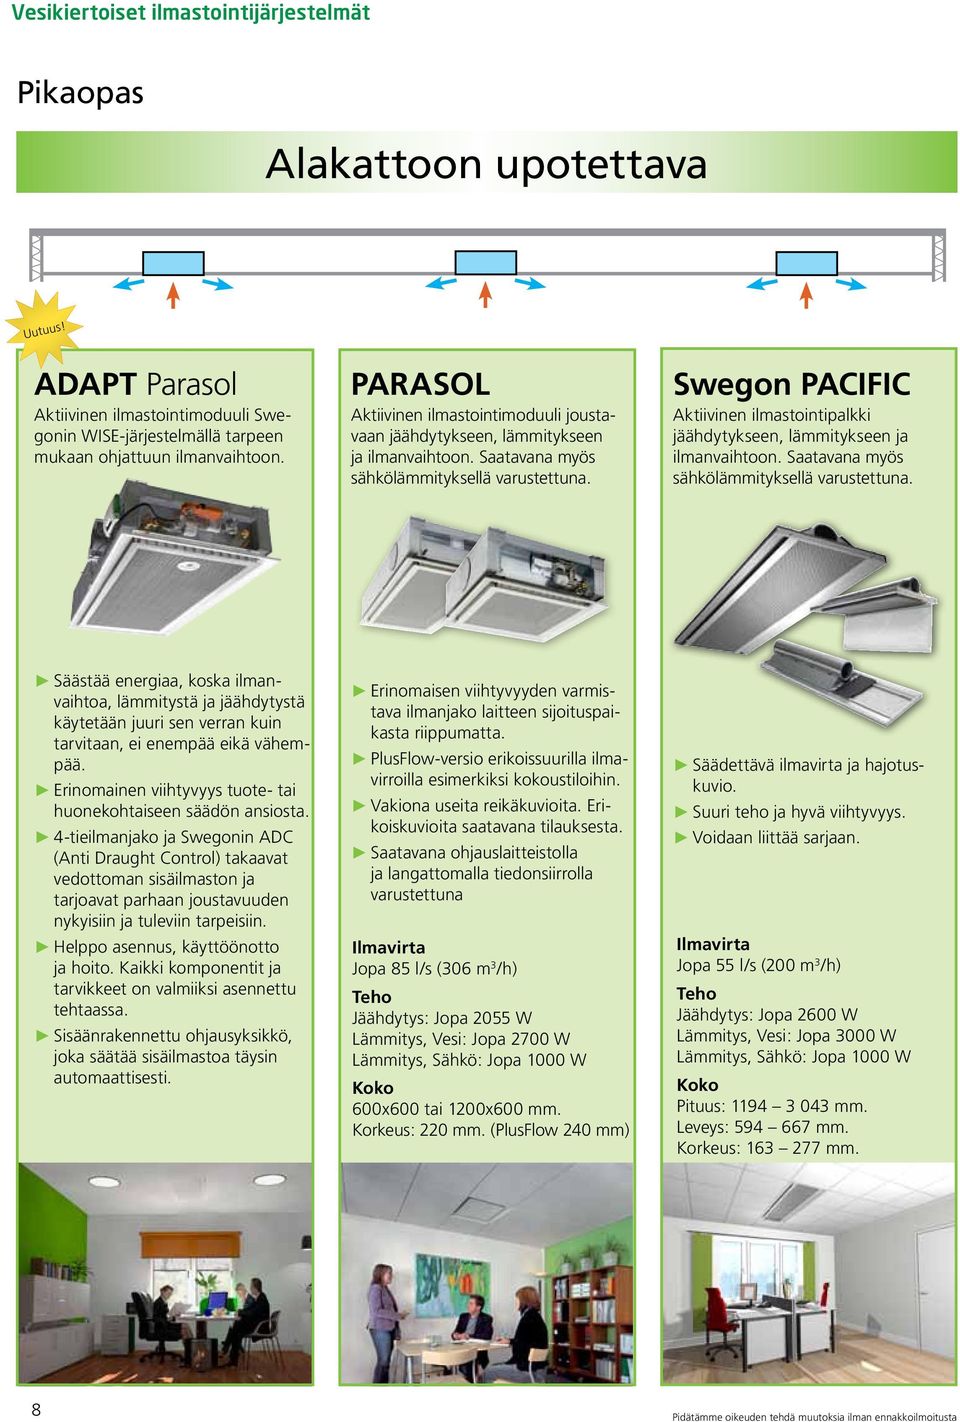 Swegon PACIFIC Aktiivinen ilmastointipalkki jäähdytykseen, lämmitykseen ja ilmanvaihtoon. Saatavana myös sähkölämmityksellä varustettuna.